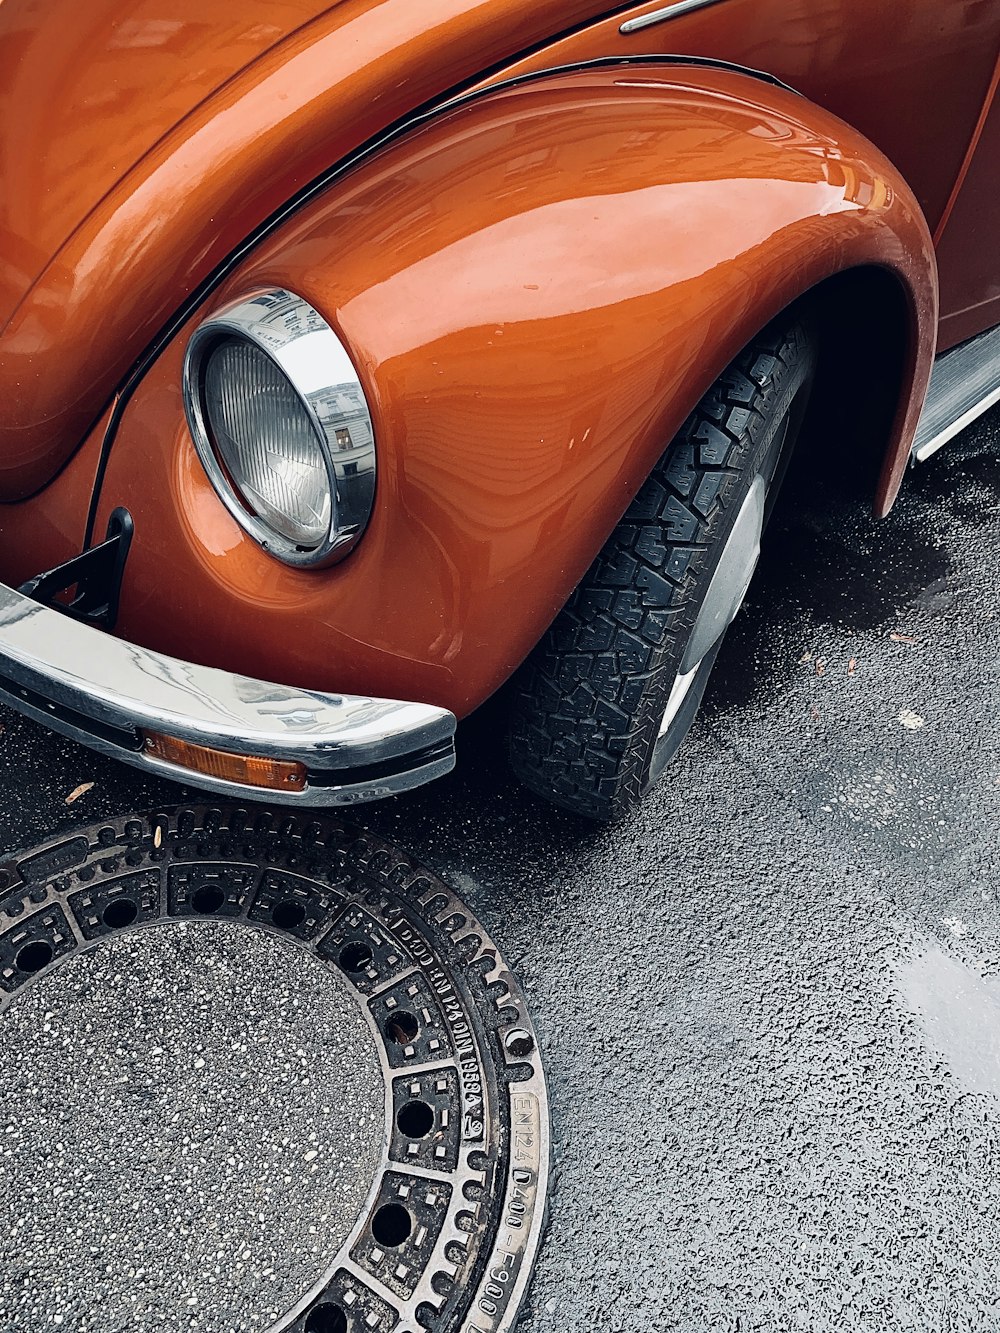 Voiture orange sur route asphaltée grise